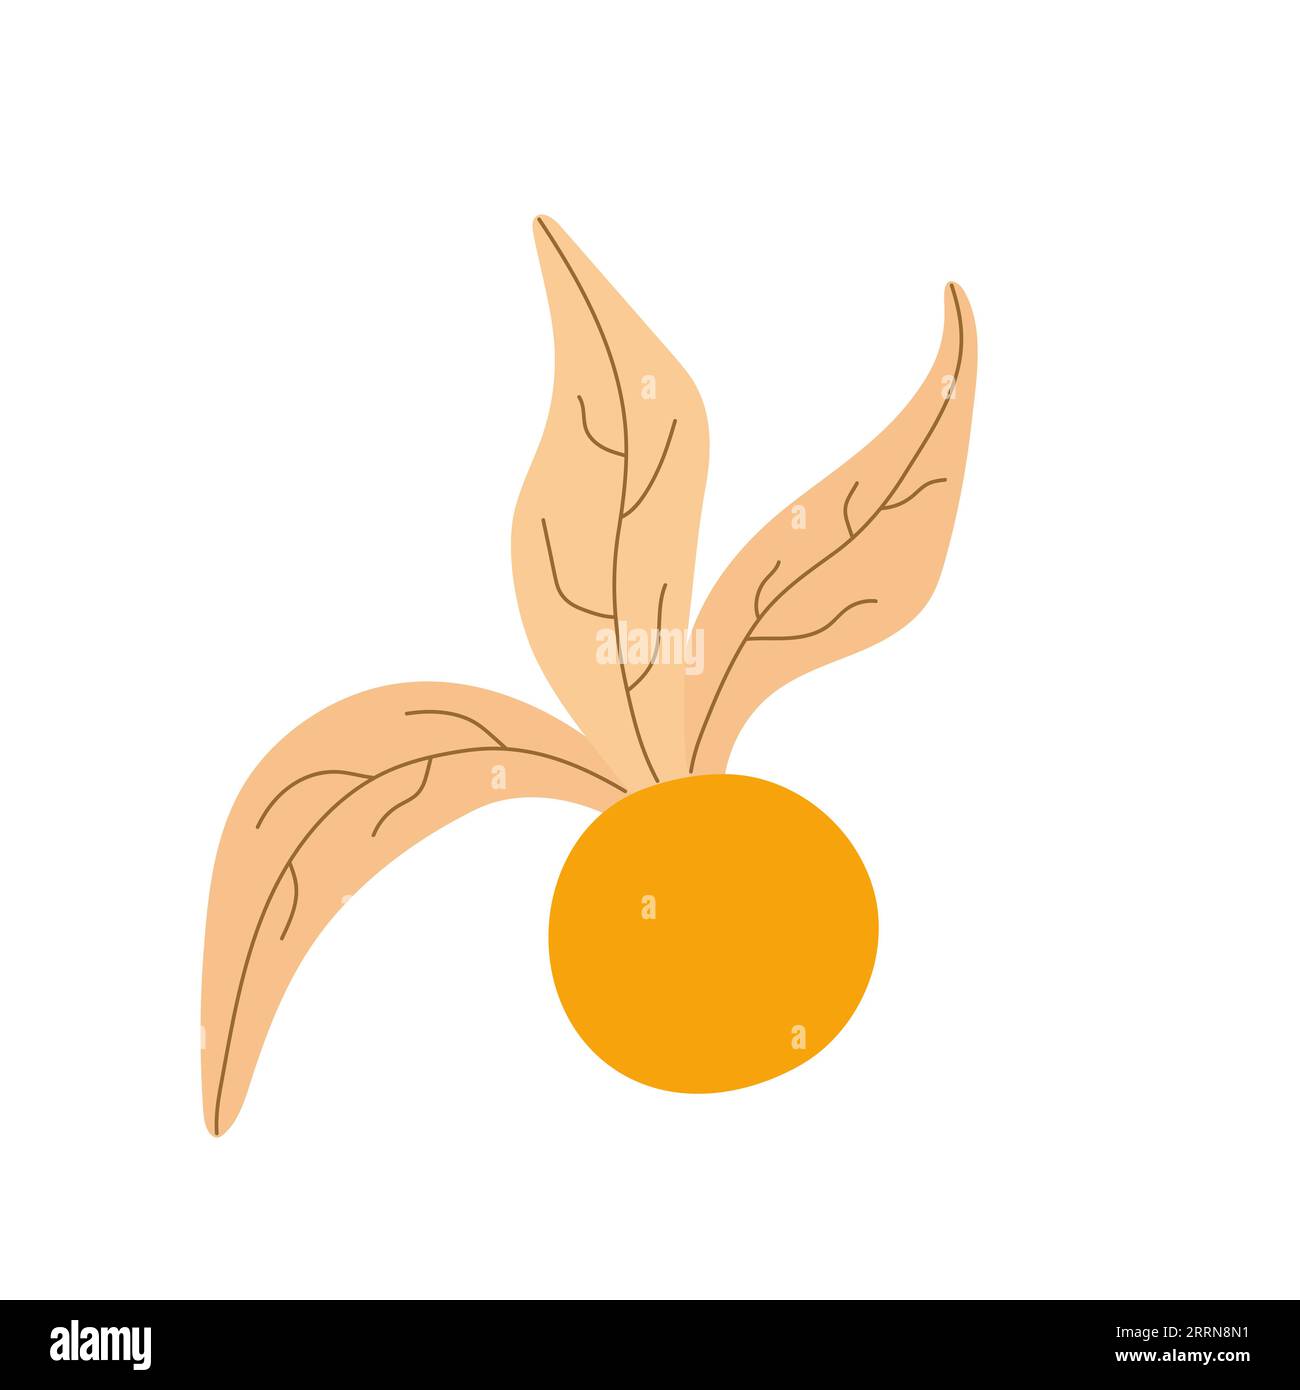 Abierto Physalis peruviana flor con baya en el interior. Elemento de cosecha de otoño. Ilustración vectorial plana de dibujos animados aislado en un fondo blanco. Ilustración del Vector